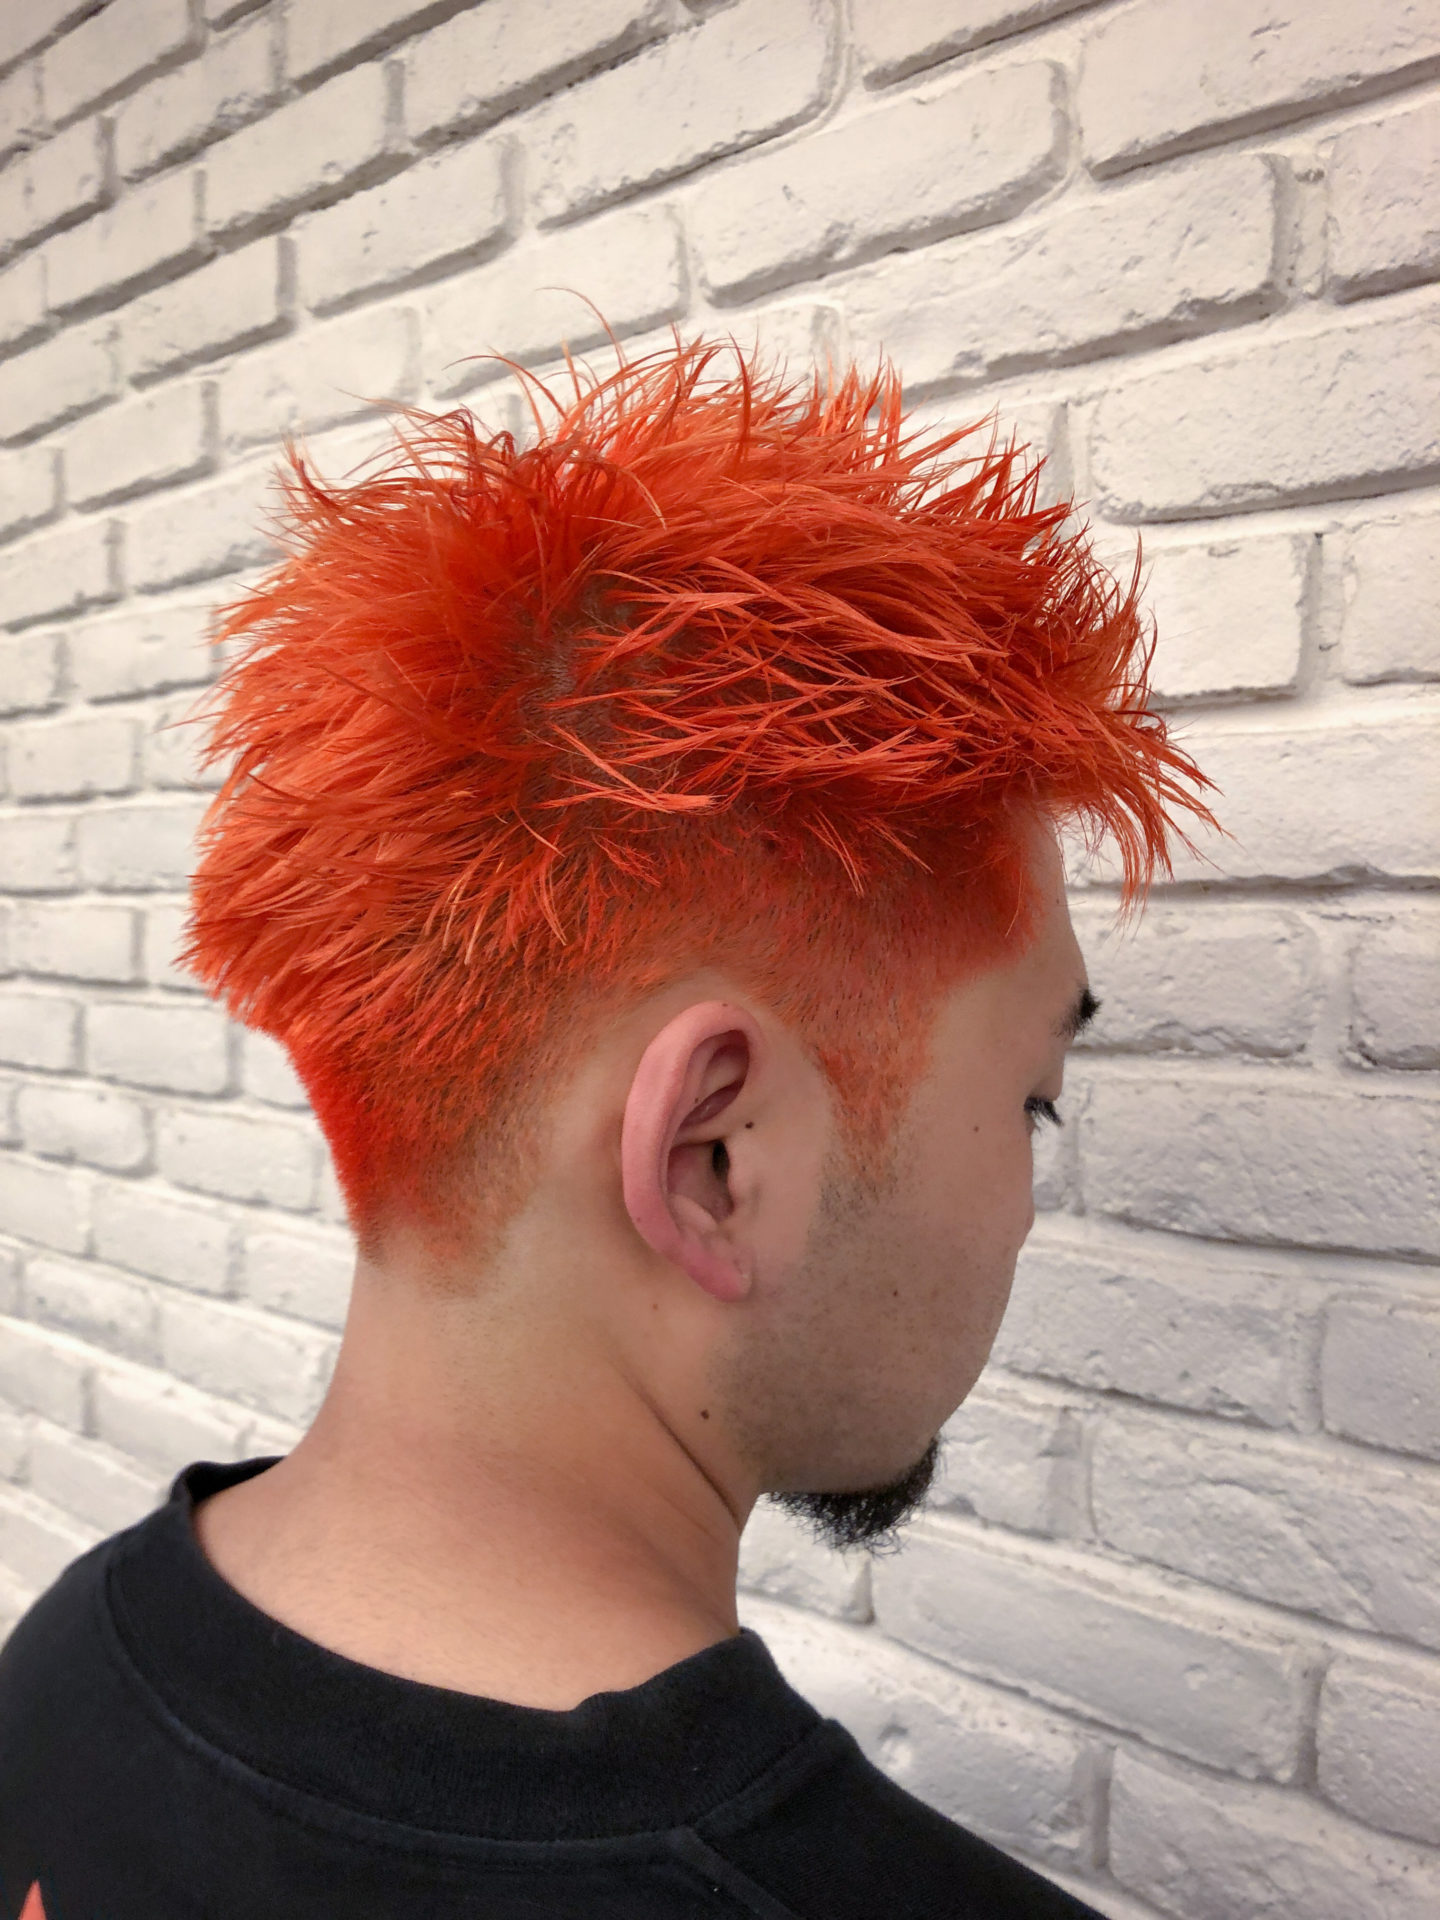 ビビットなオレンジヘア